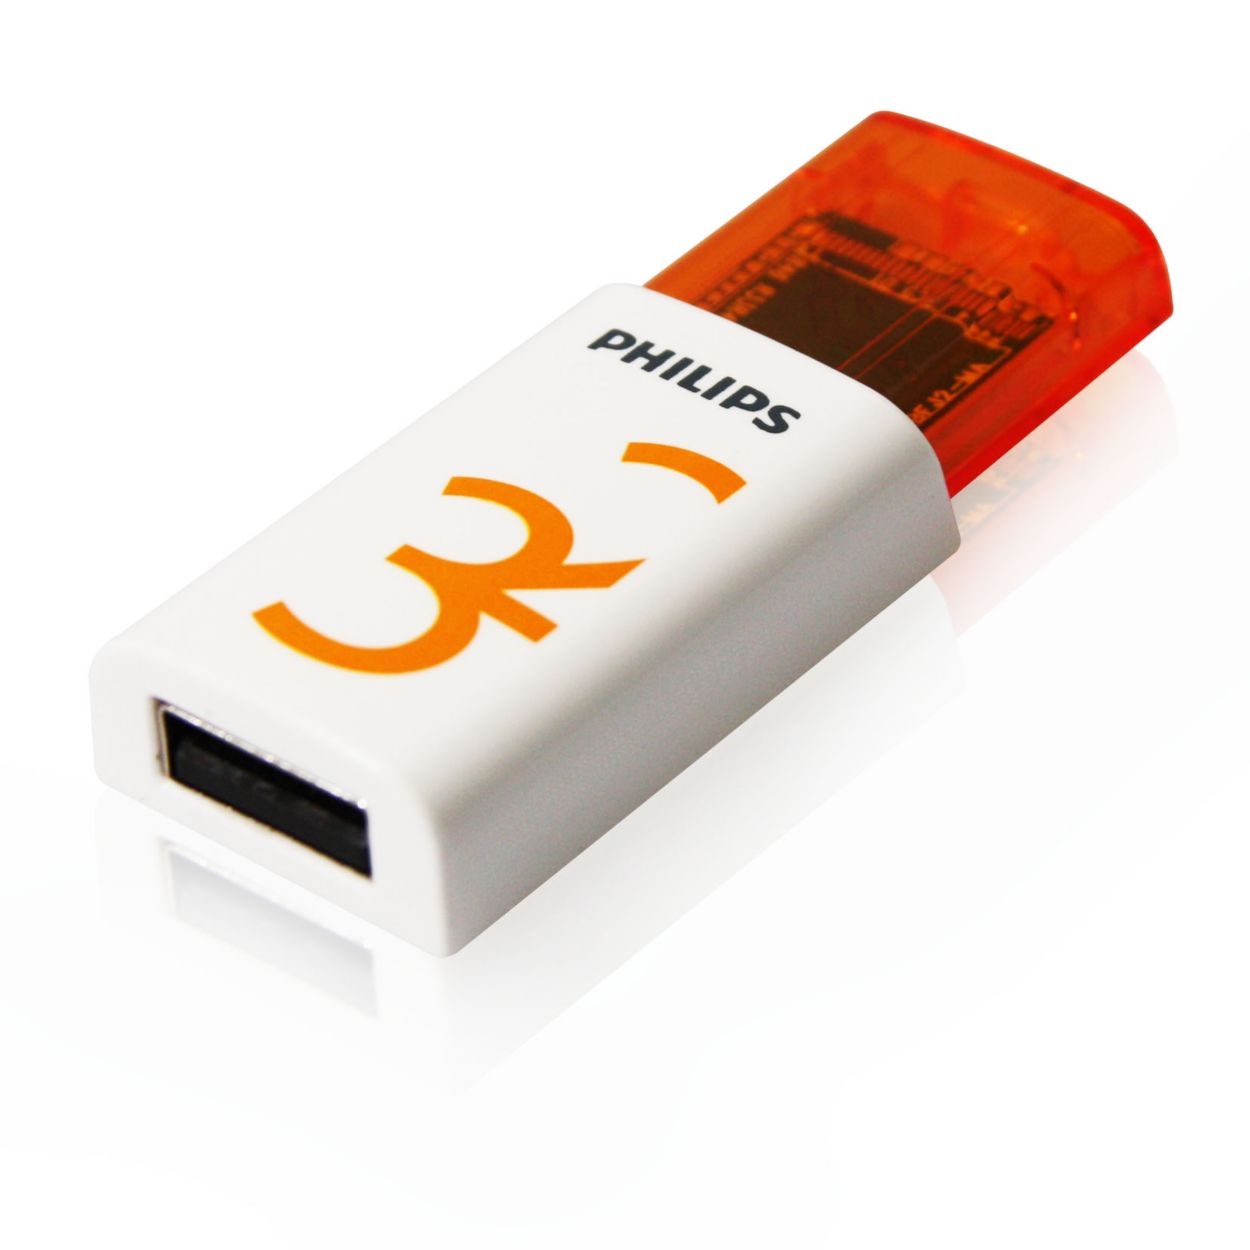 Flash 32.0. Флешка USB 2.0. USB флешка Philips. Флешка 32. Philips флешка Flash Drive.